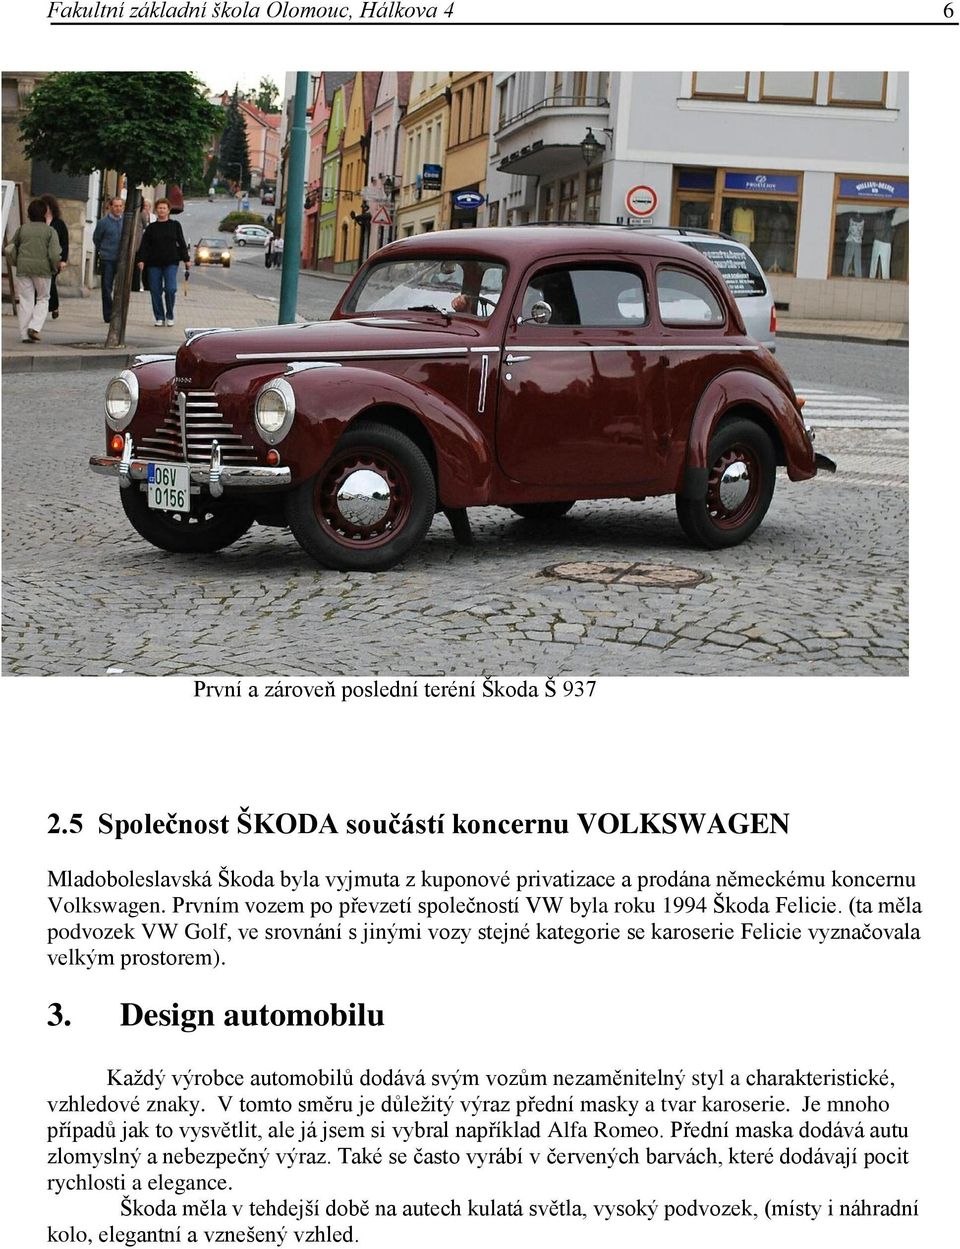 Prvním vozem po převzetí společností VW byla roku 1994 Škoda Felicie. (ta měla podvozek VW Golf, ve srovnání s jinými vozy stejné kategorie se karoserie Felicie vyznačovala velkým prostorem). 3.